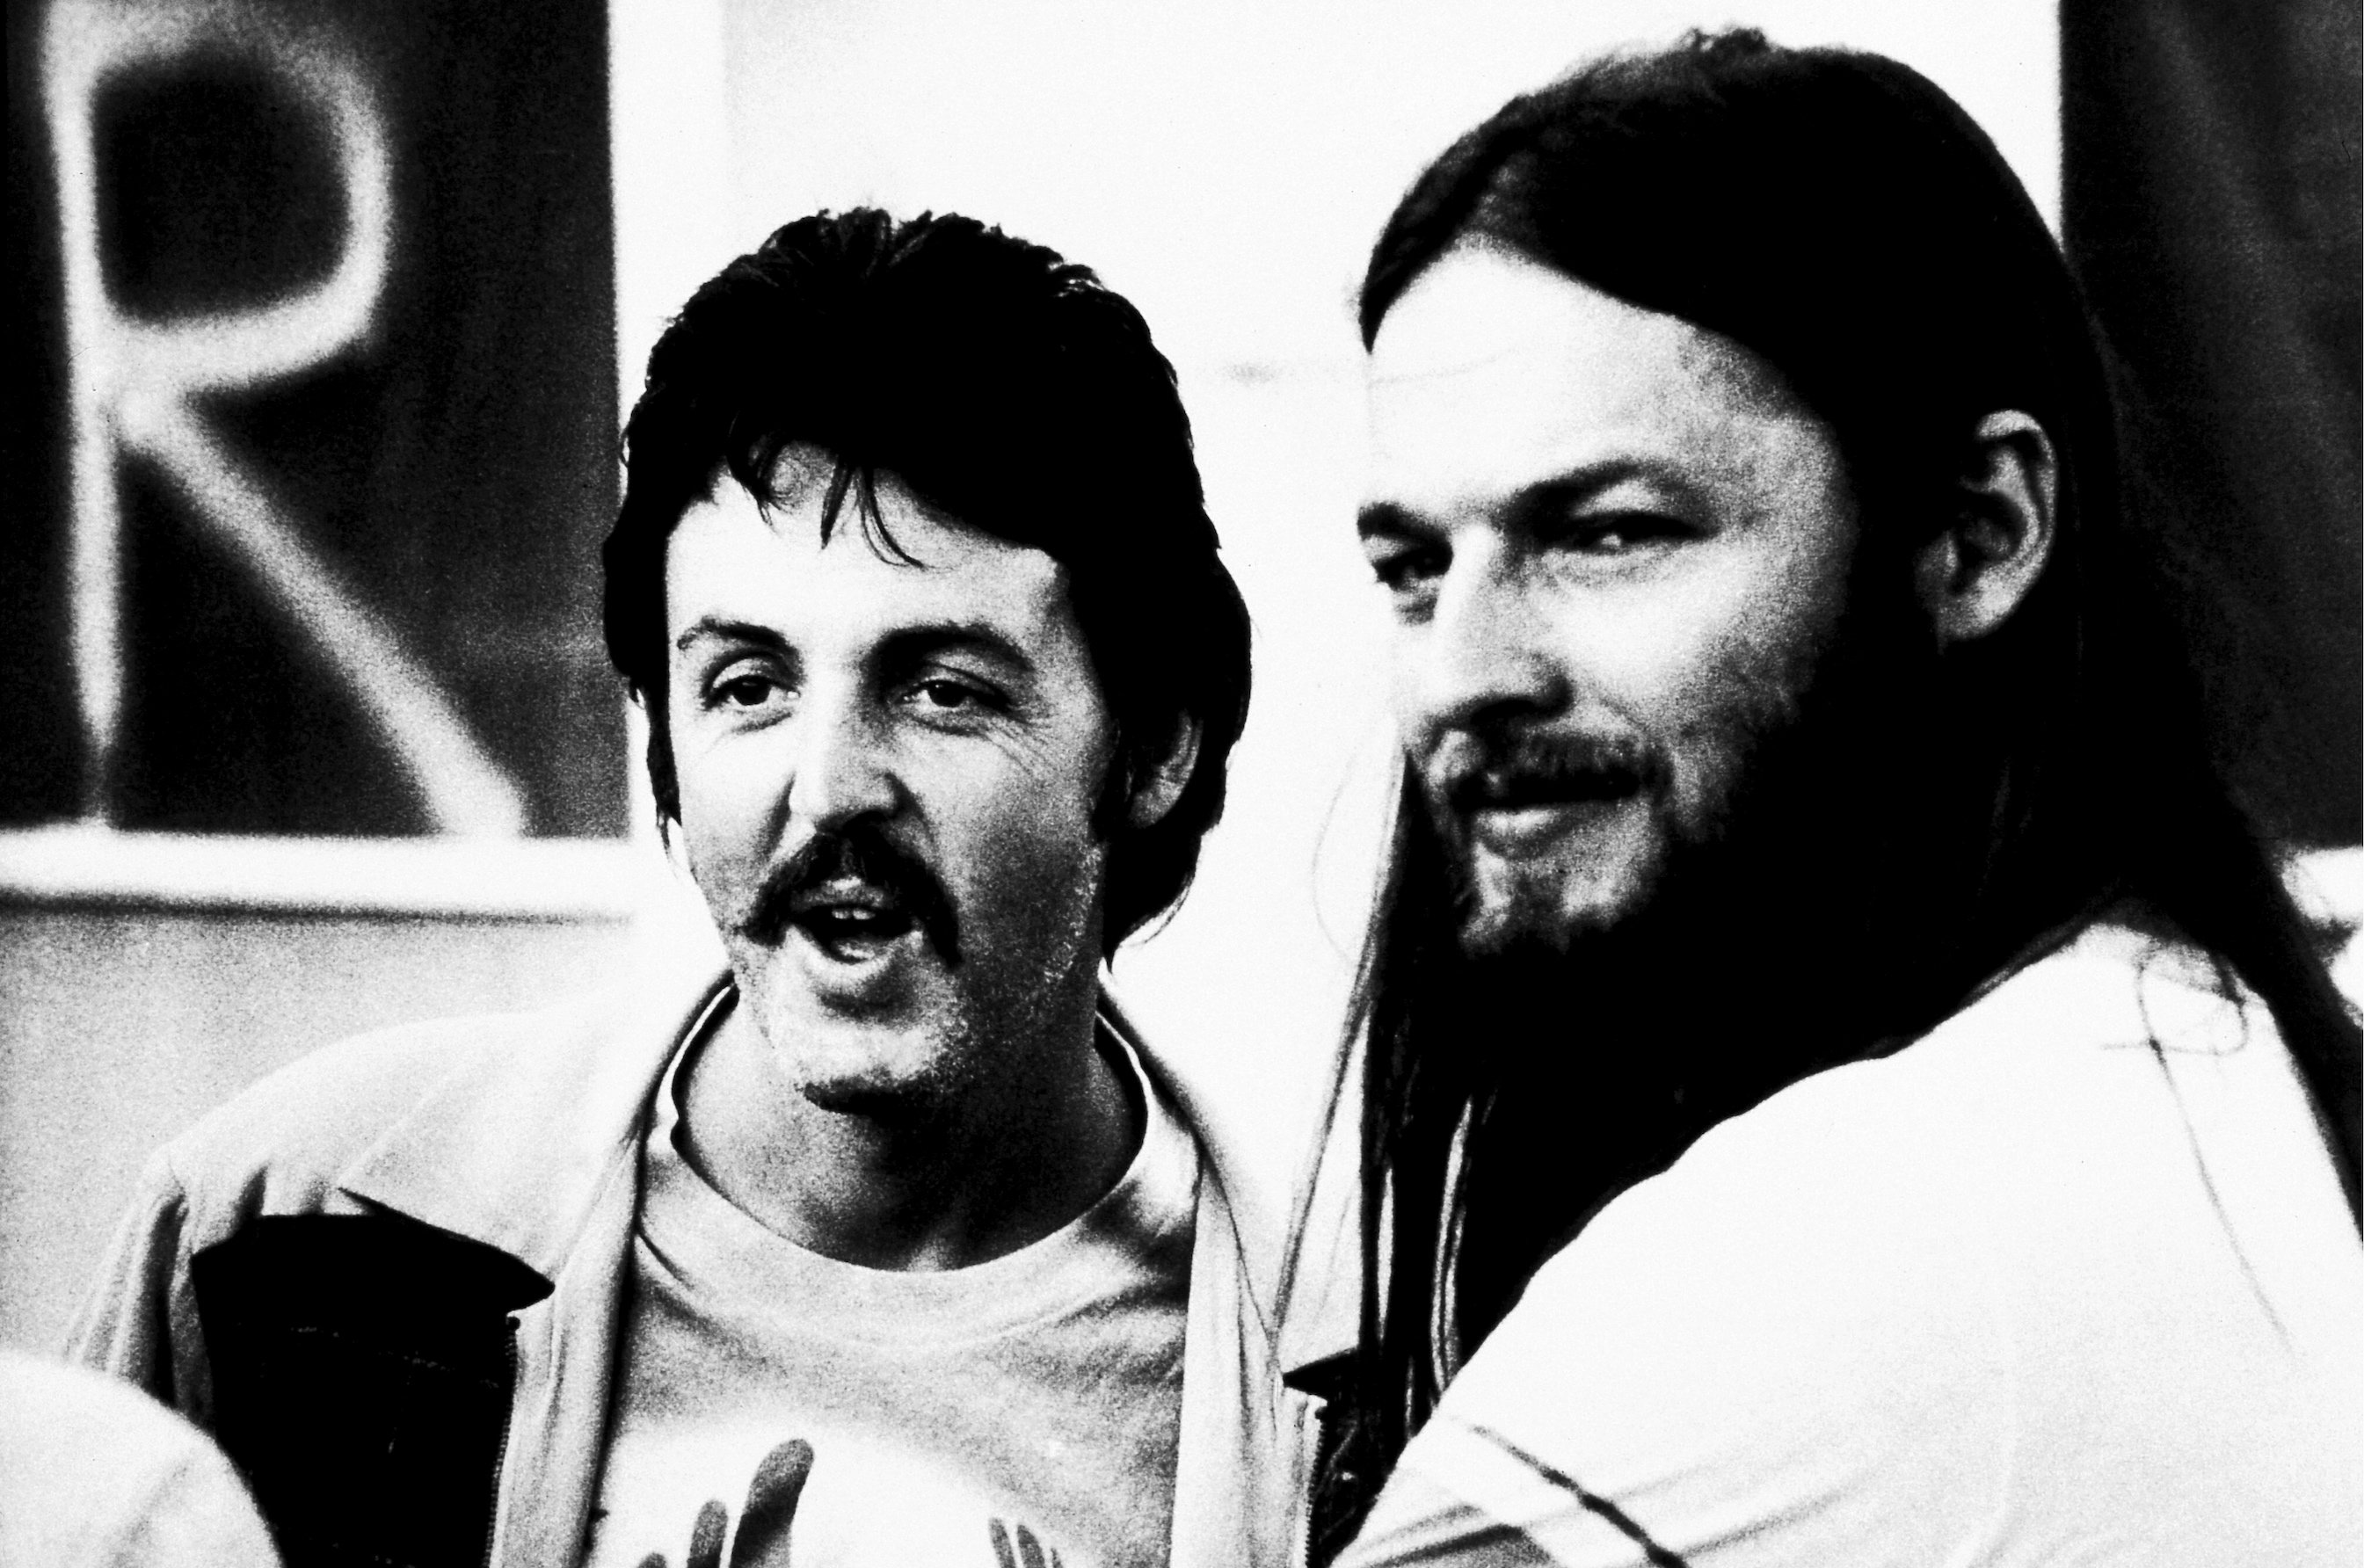 Paul McCartney, Pink Floyd'un 'The Dark Side of the Moon' Programına Neredeyse Konuk Çıkacaktı